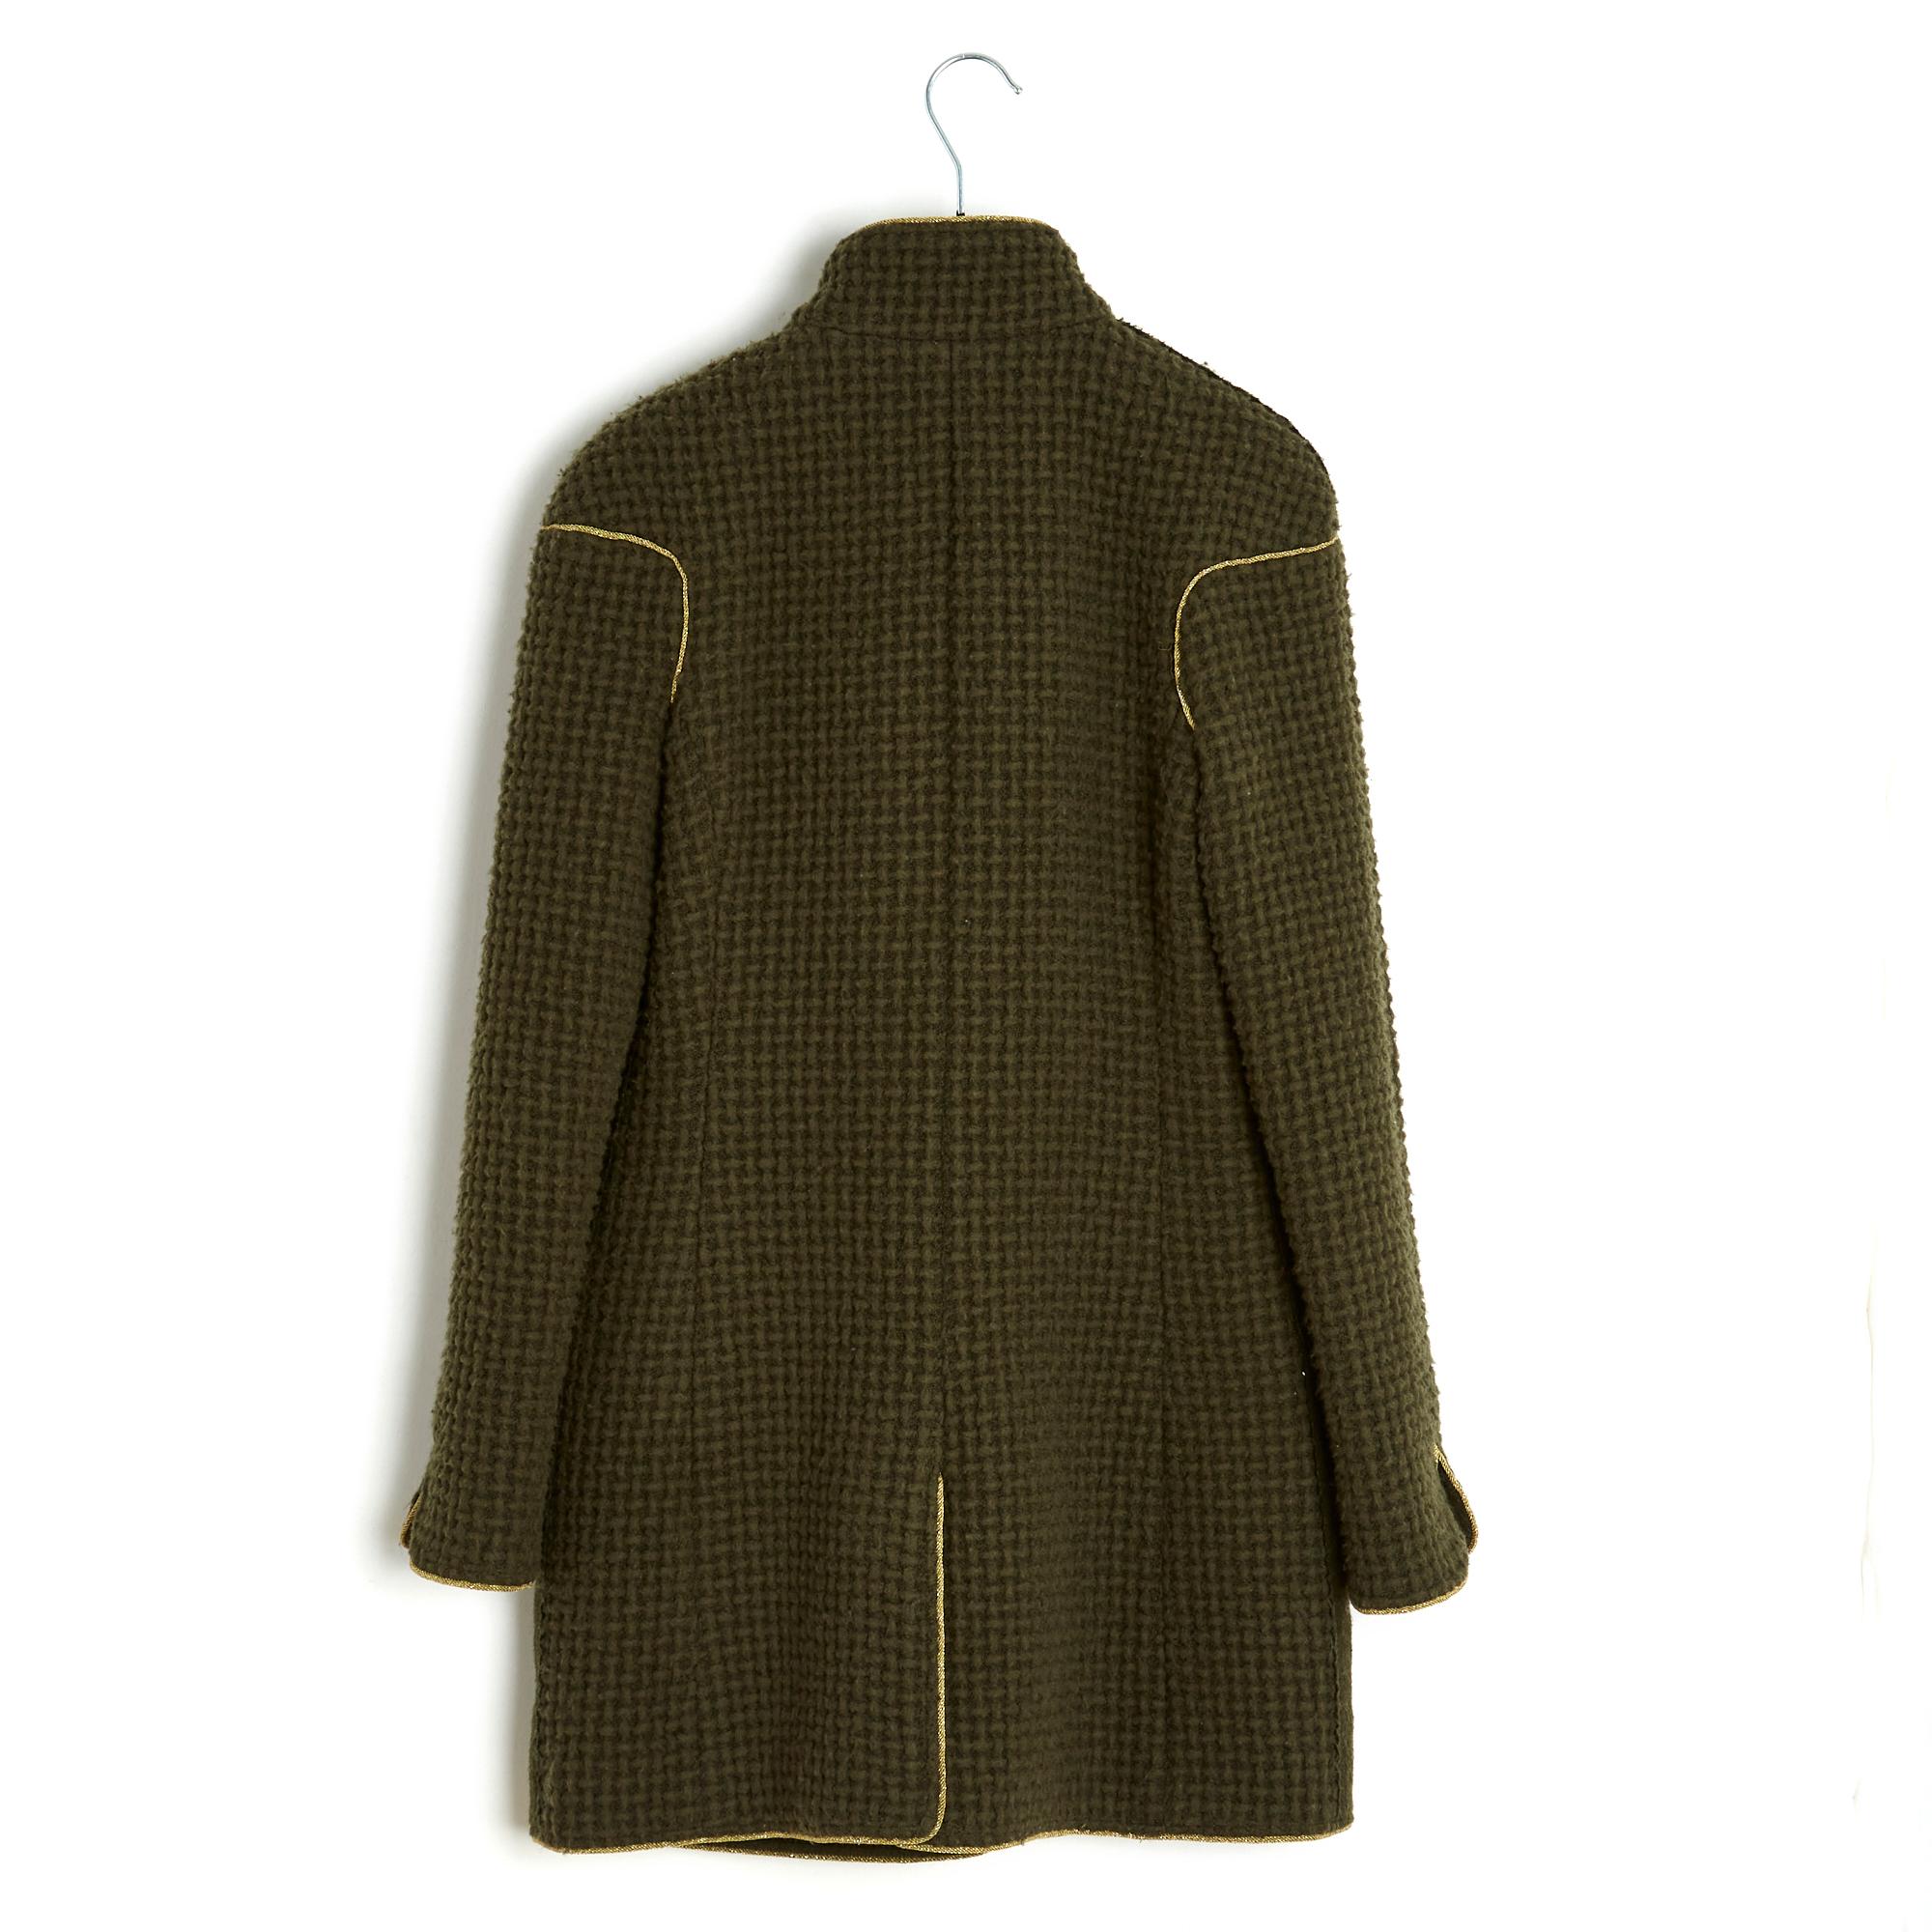 Pre fall 2015 Salzburg Jacket FR38 Khaki soft wool For Sale 3